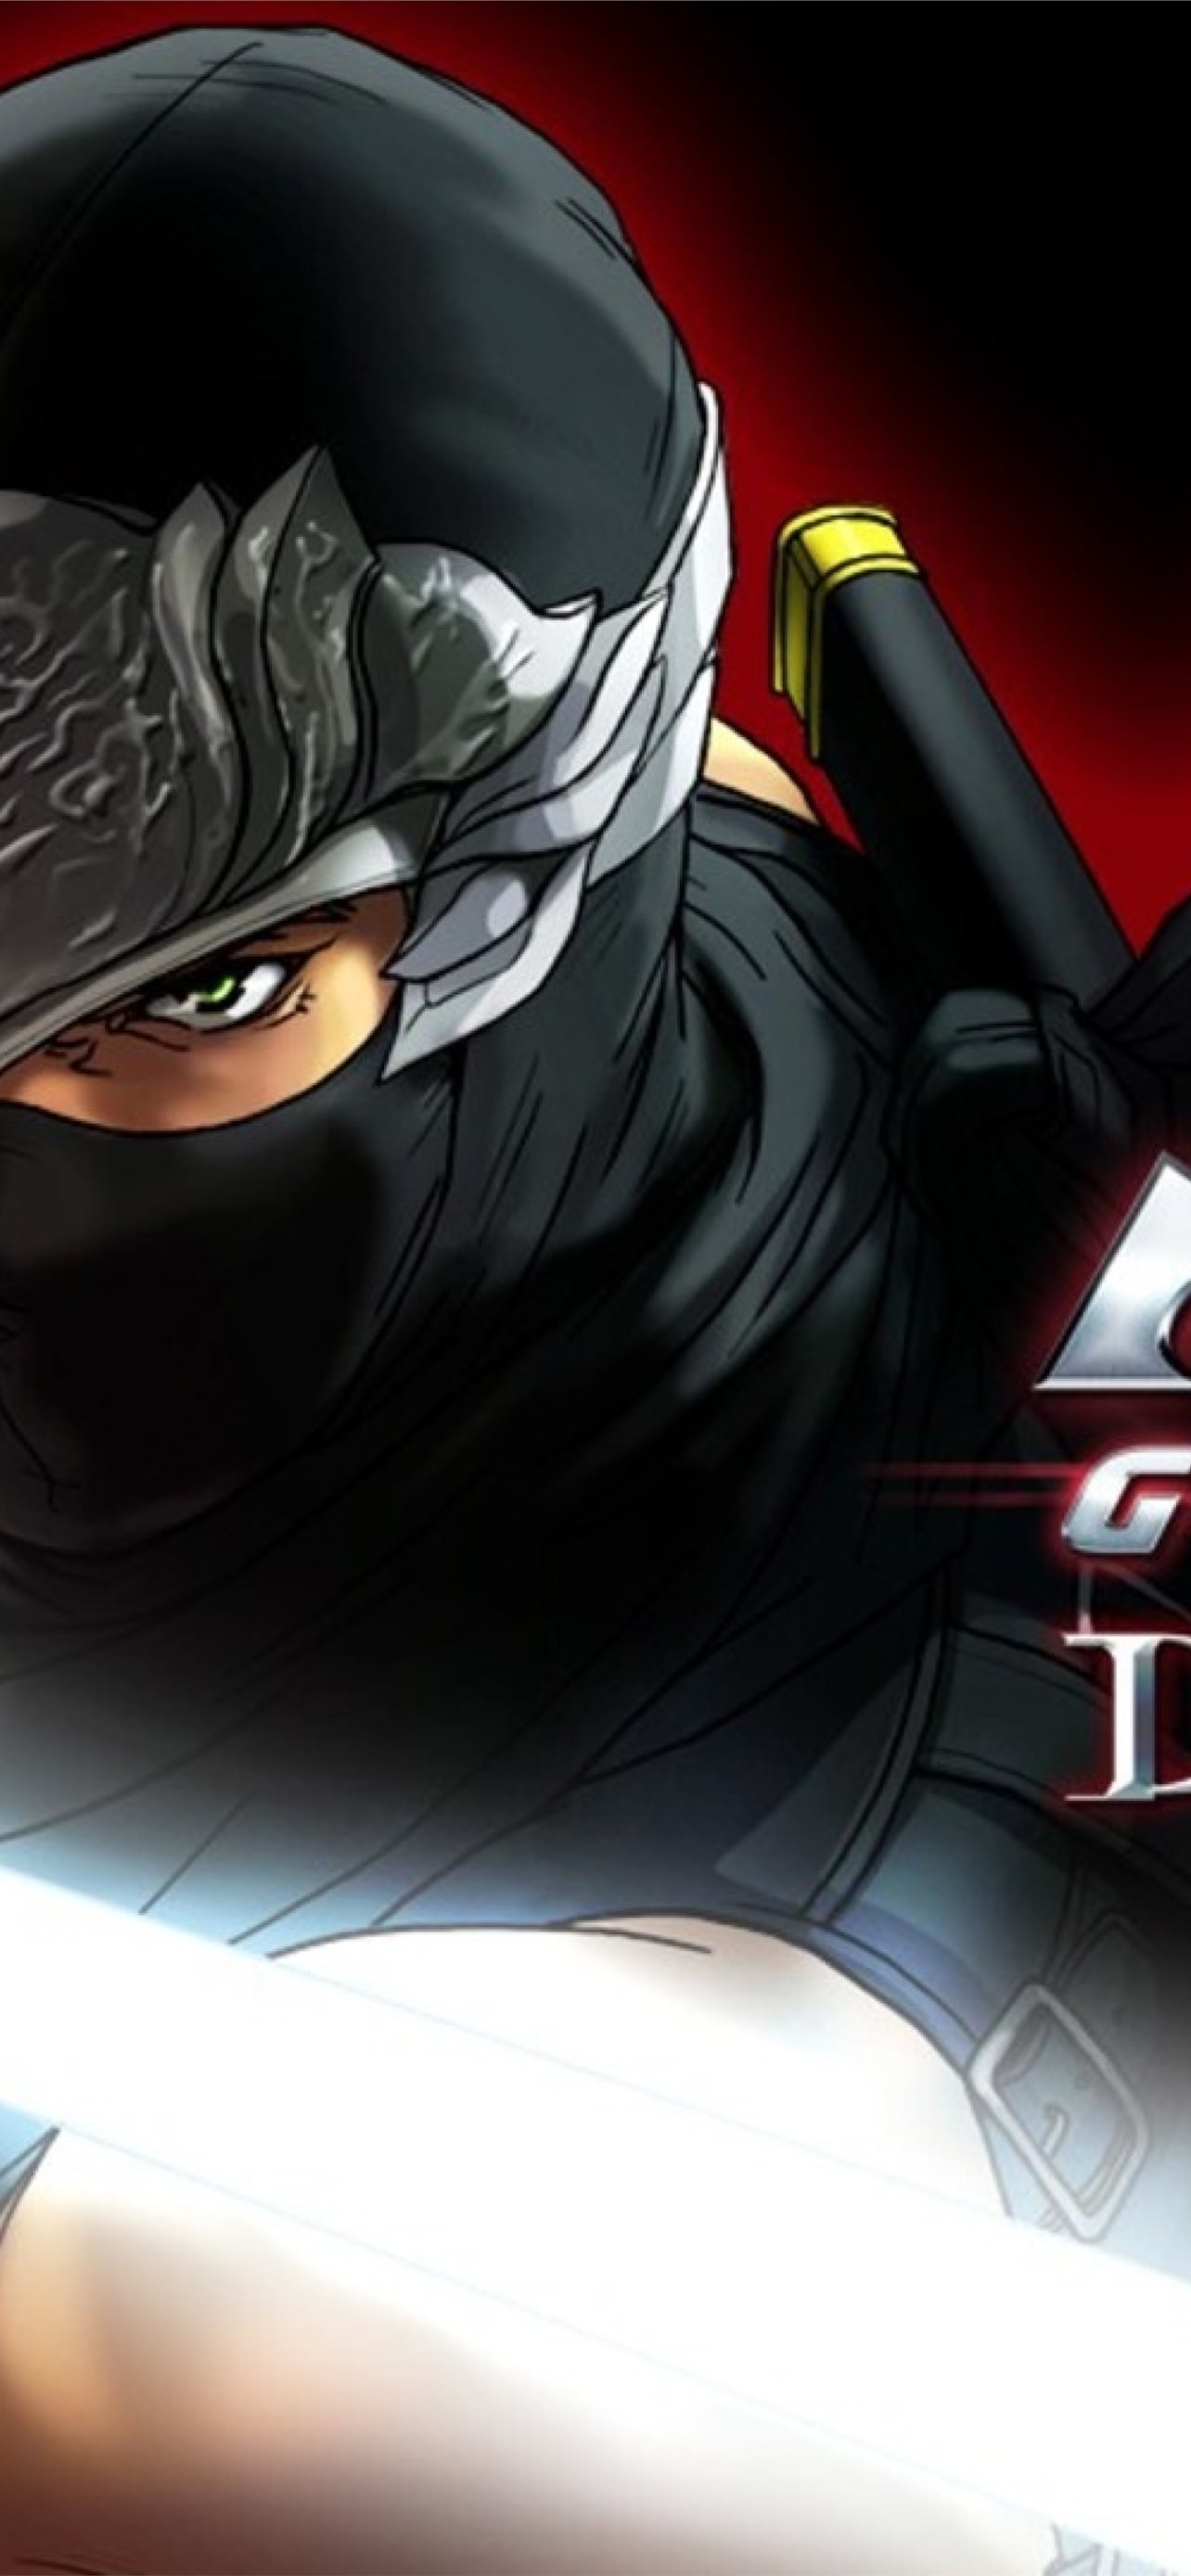 Ninja fortnite iphone wallpapers free download